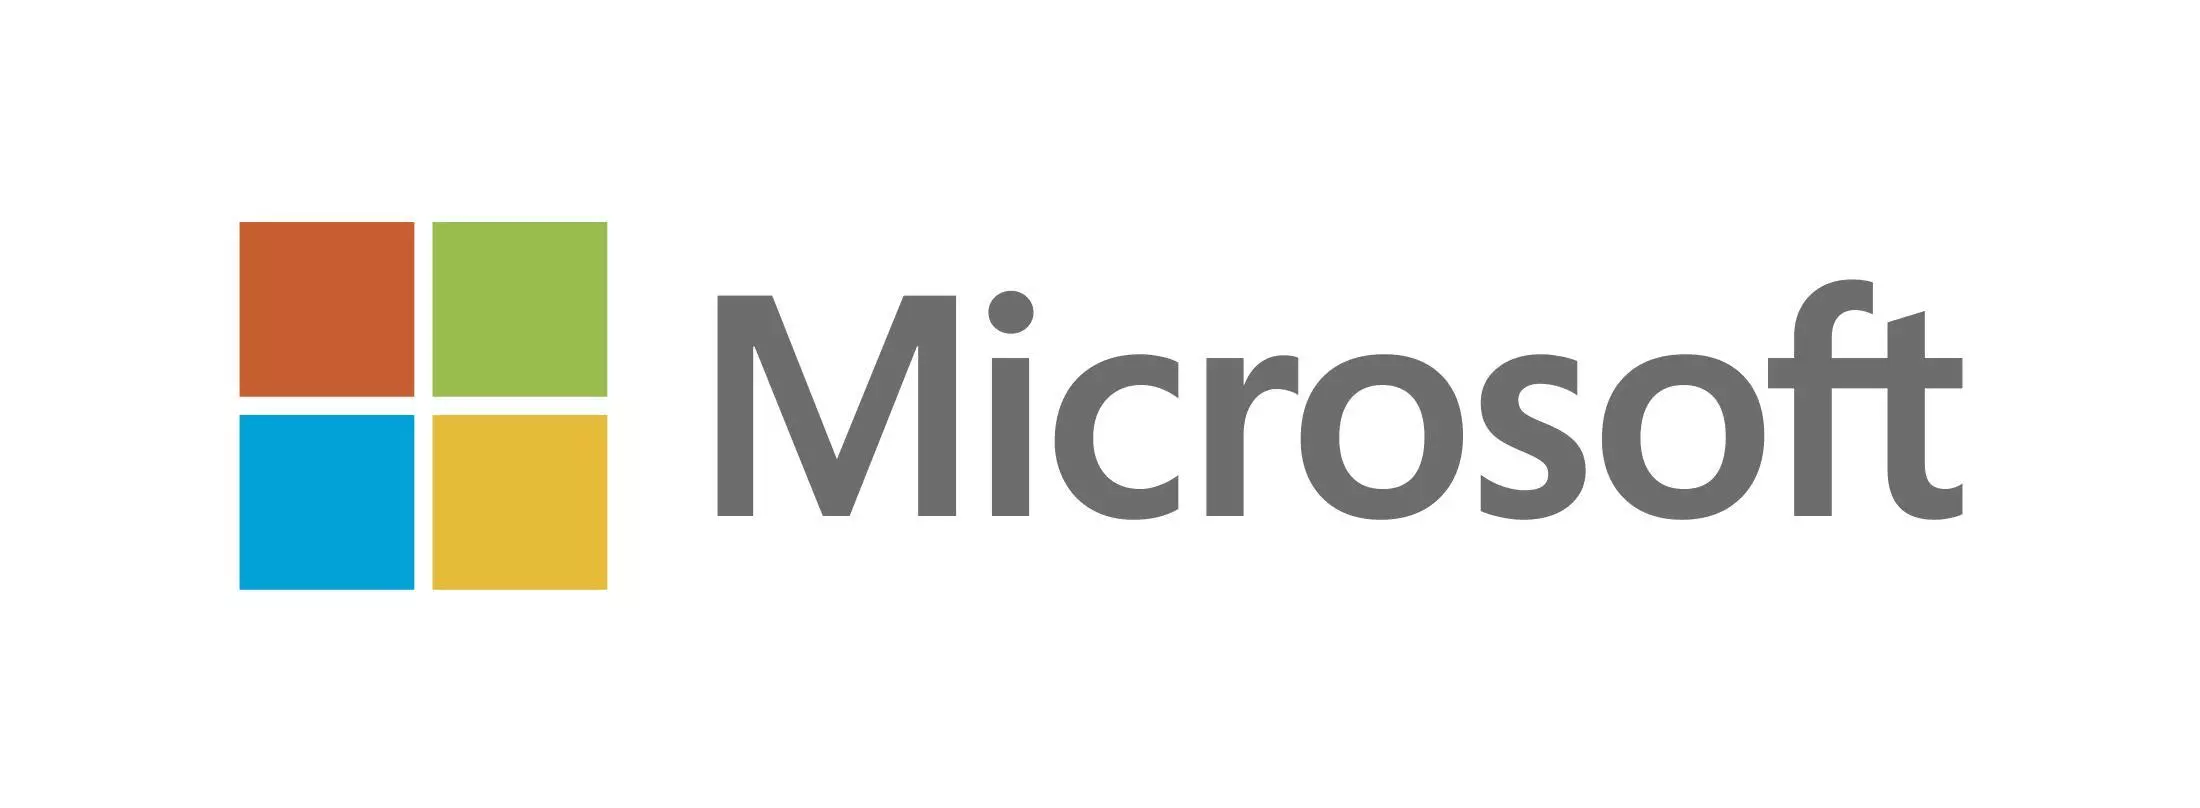 Action Microsoft : sentiment technique négatif